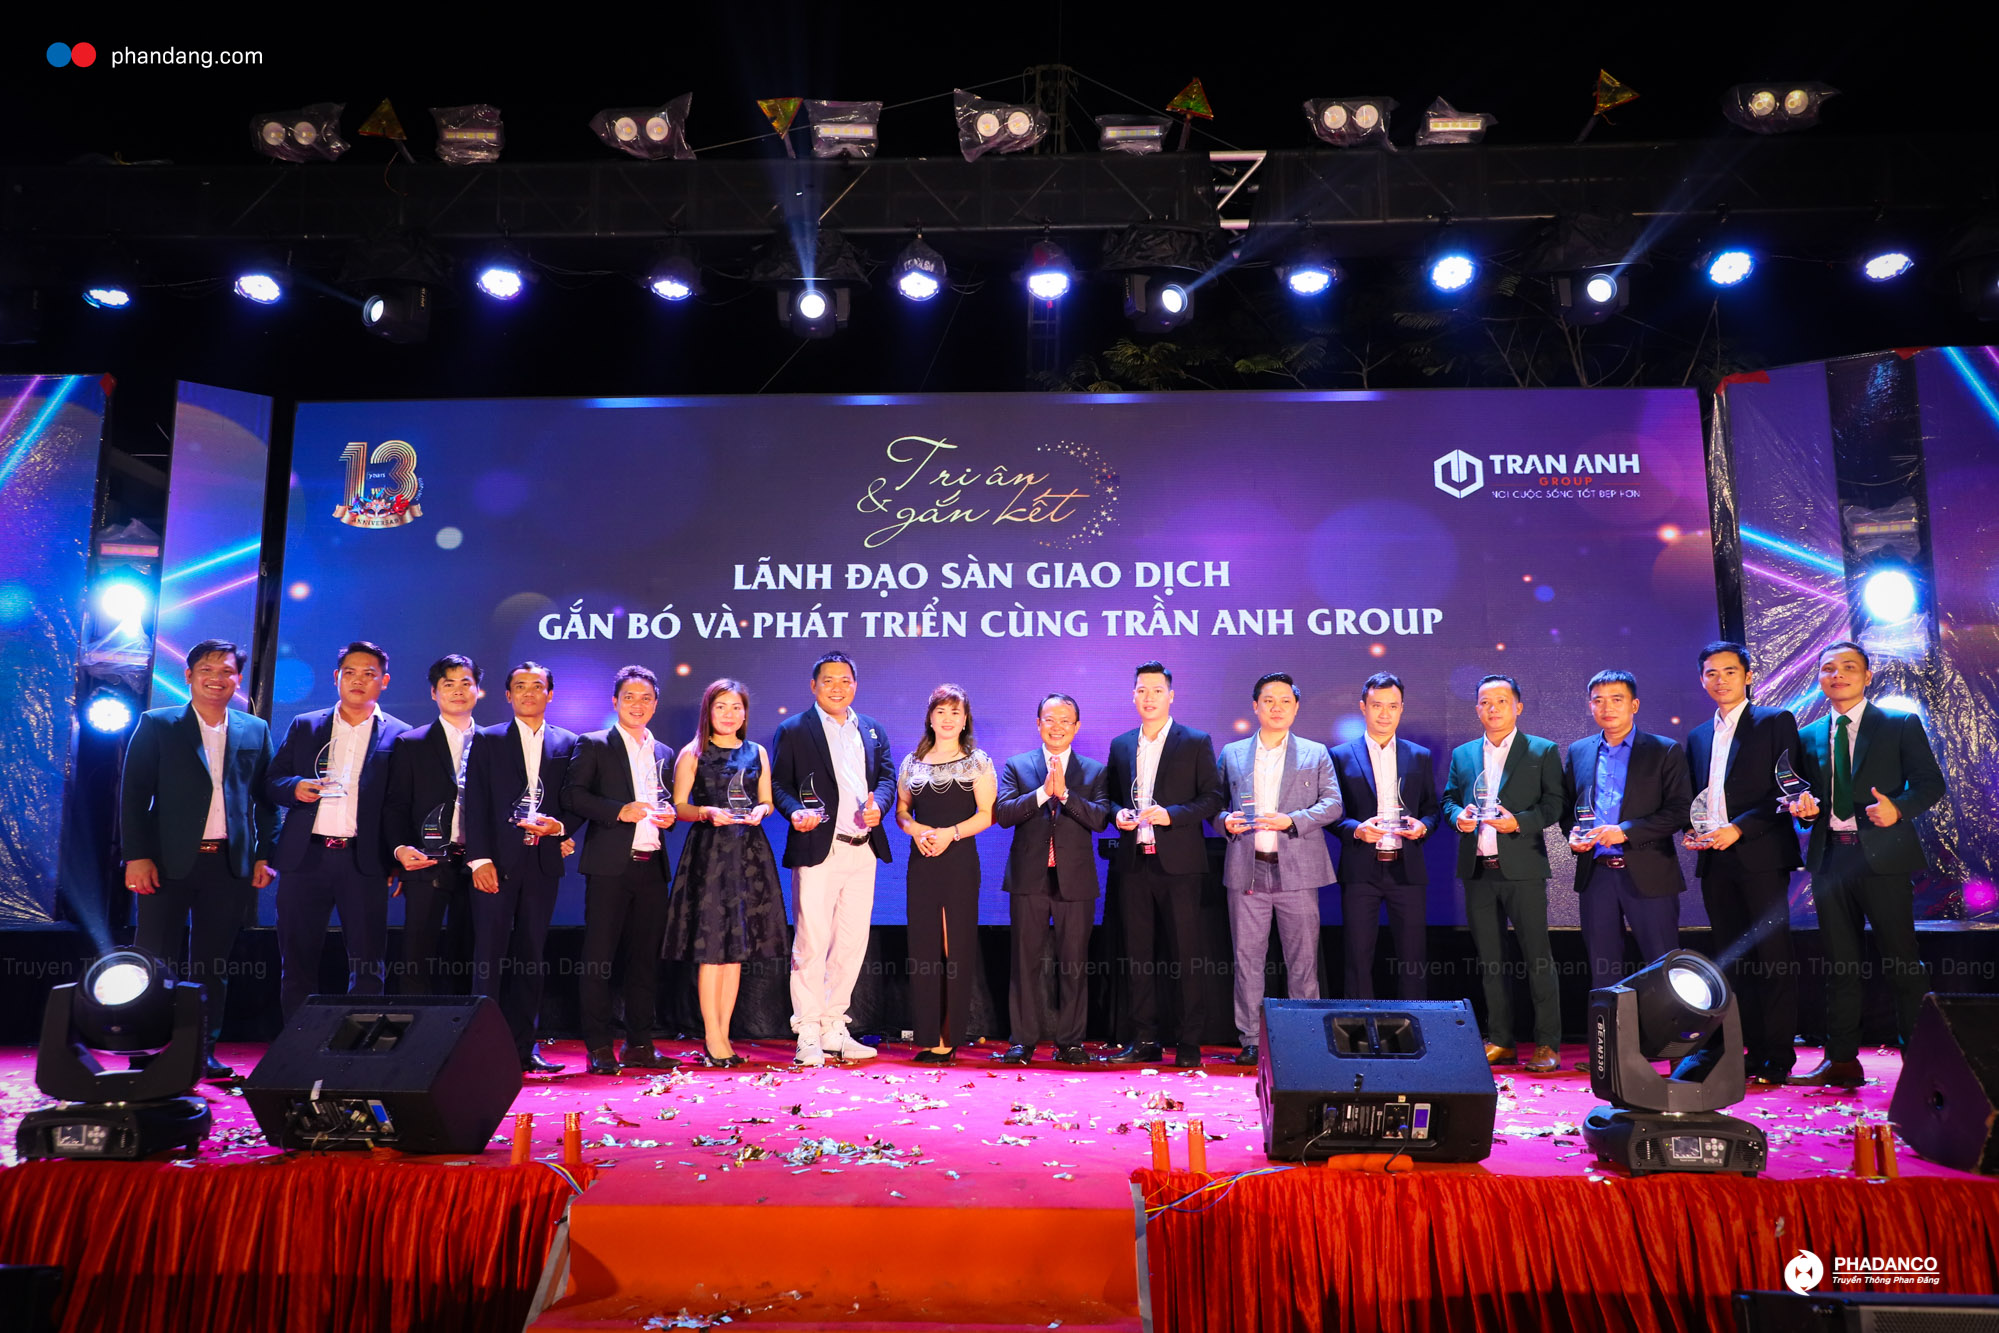 Truyền thông Phan Đăng tổ chức lễ kỷ niệm 13 năm Trần Anh Group